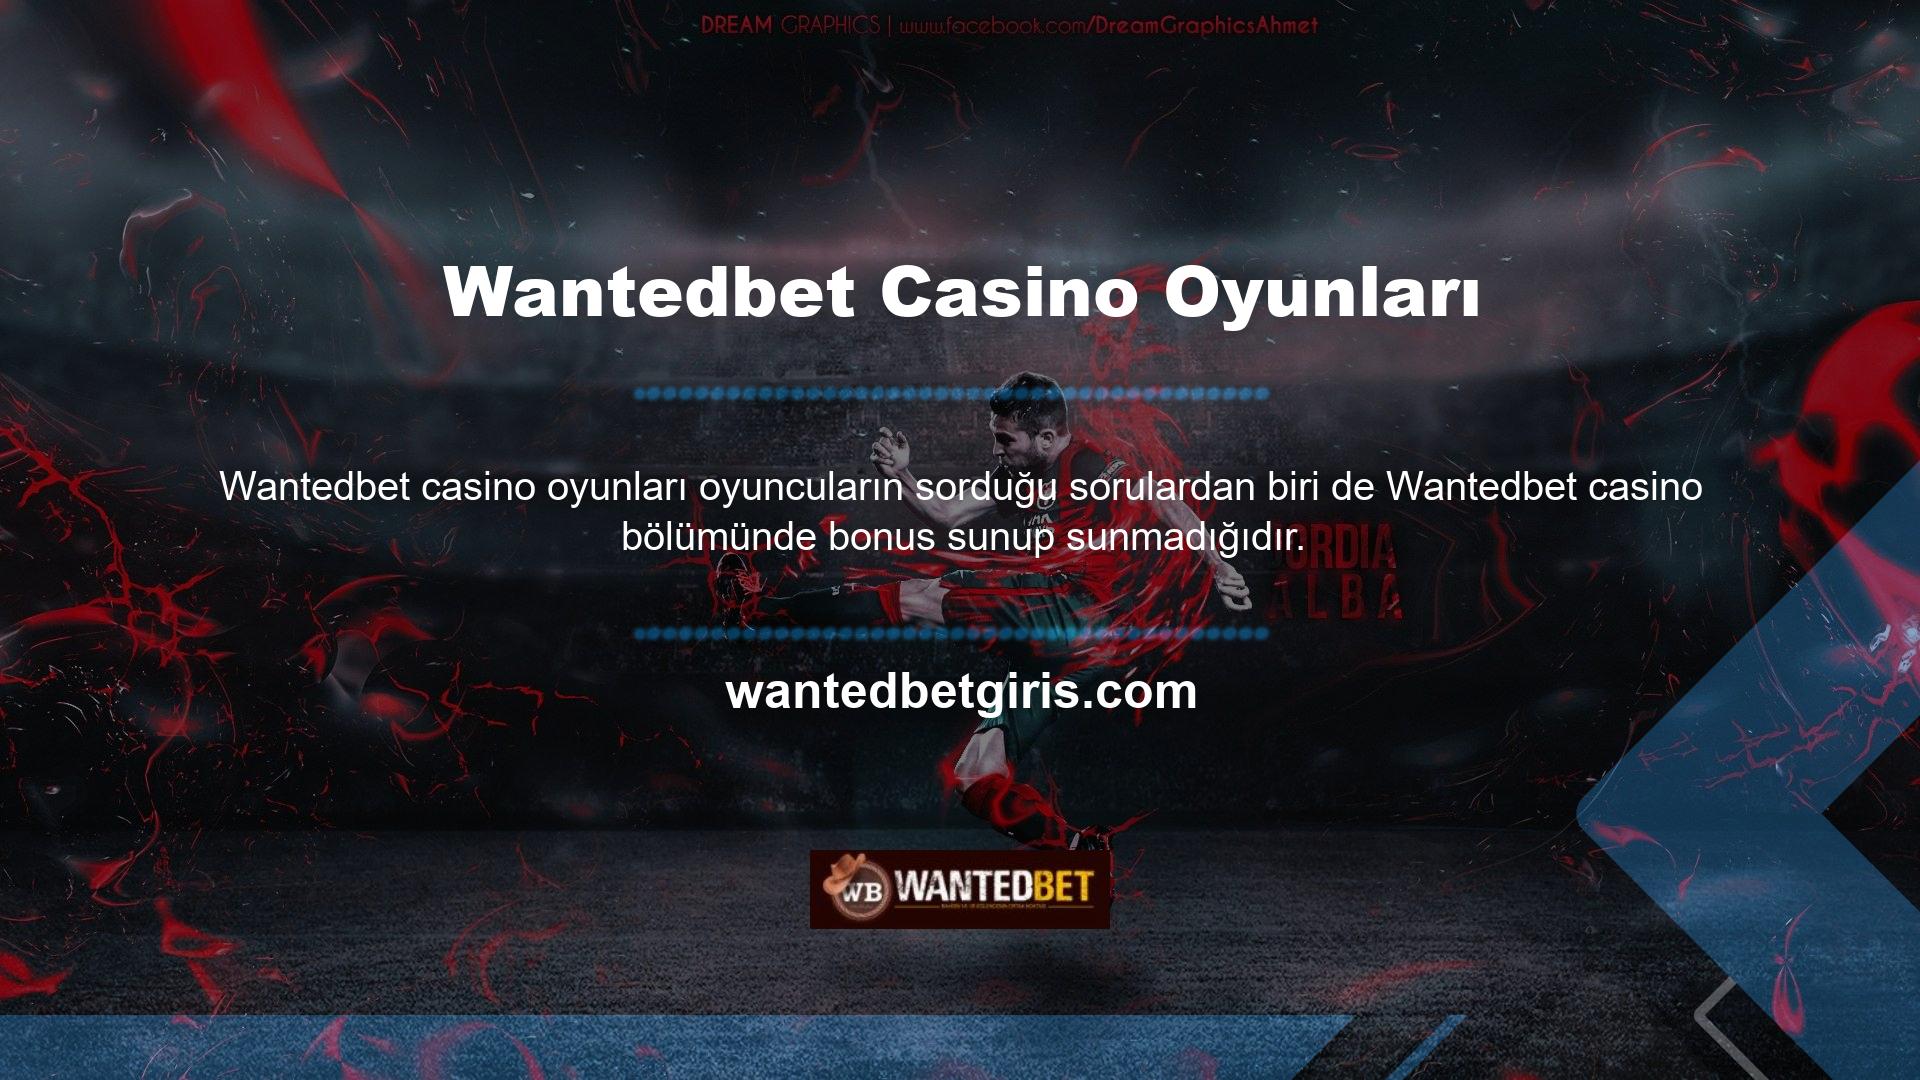 Çok cömert bir bahis sitesi olarak Wantedbet, bonusların oyuncular için önemini anlıyor